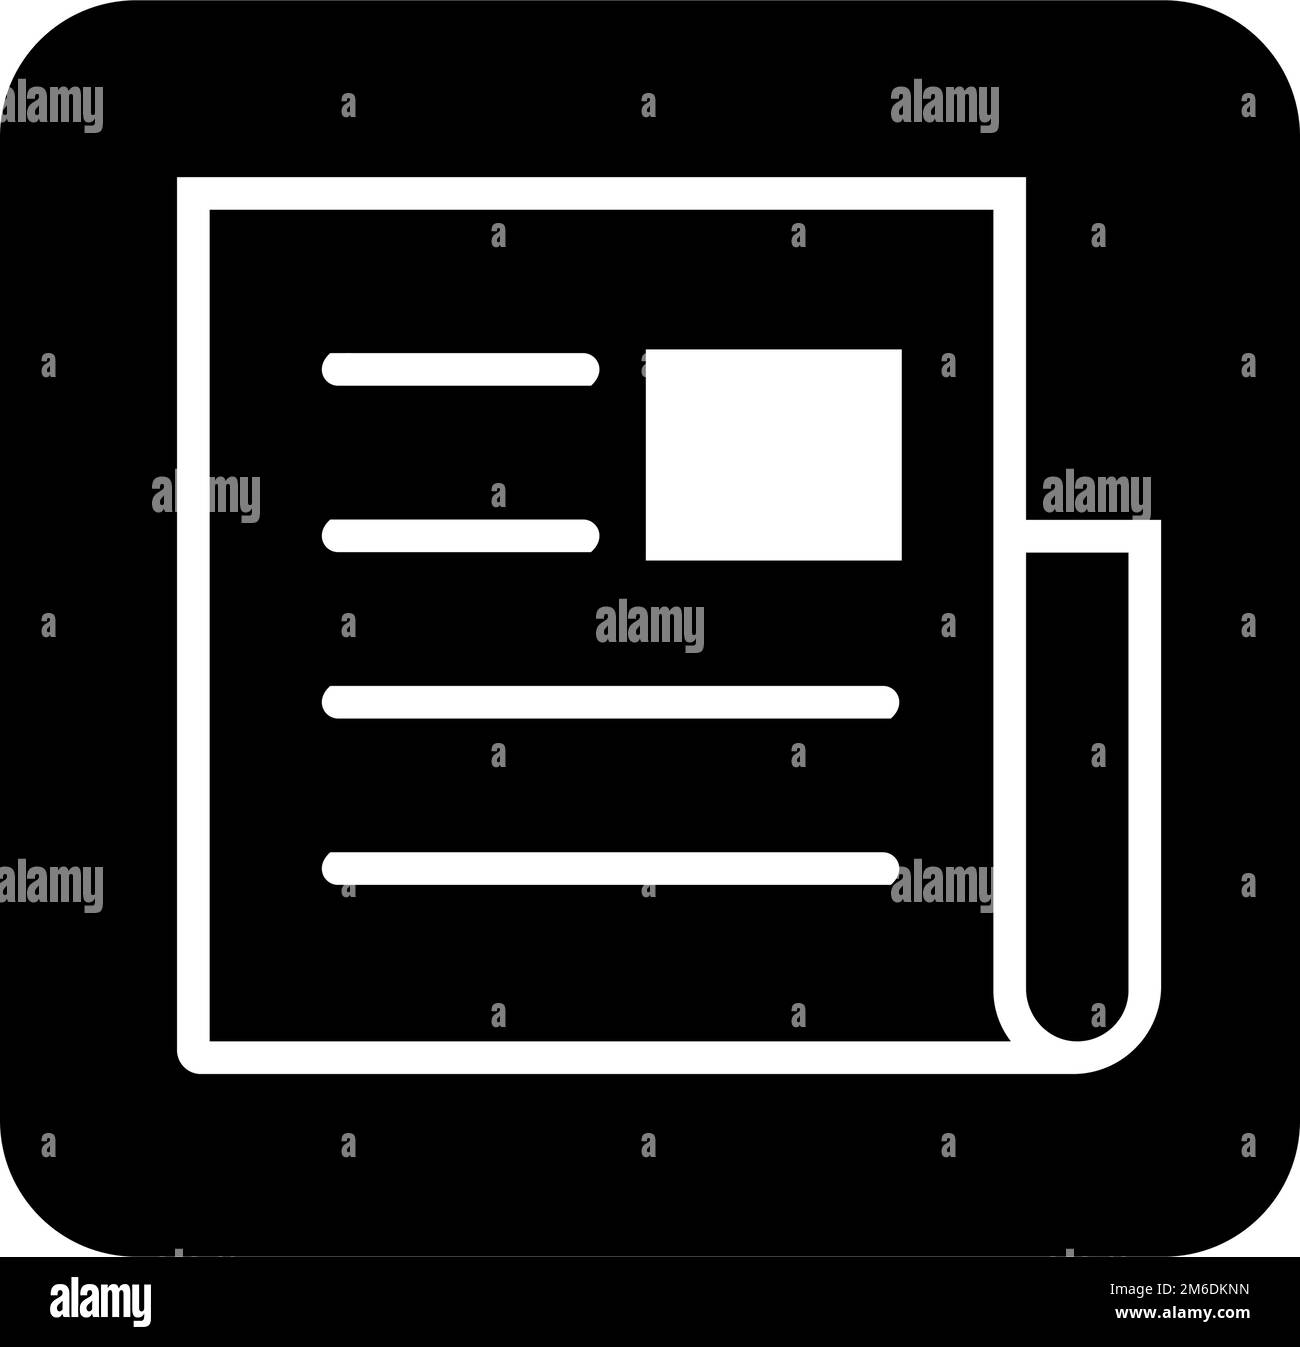 Square receipt silhouette icon. Invoice symbol. Editable vector. Stock Vector